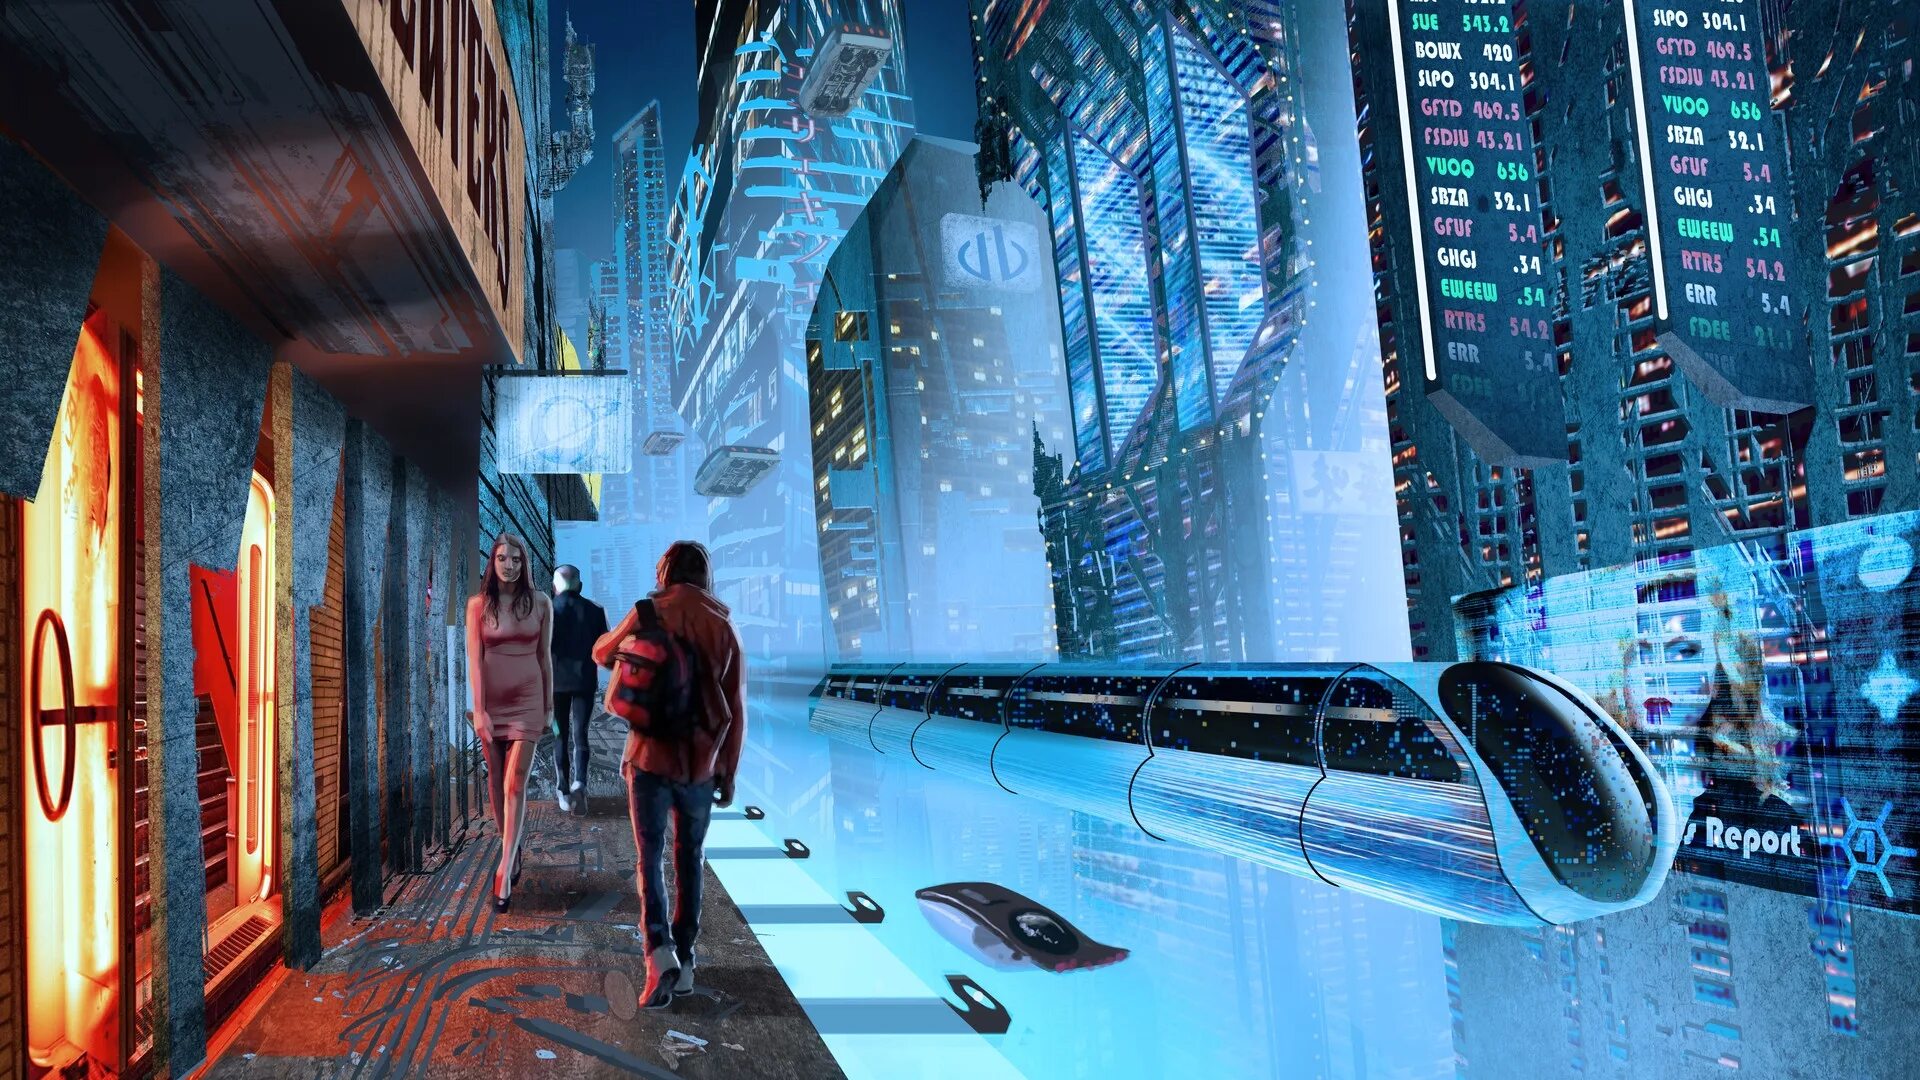 Киберпанк город футуристичный будущего. Город будущего Cyberpunk. Найт Сити киберпанк. Будущее арт.